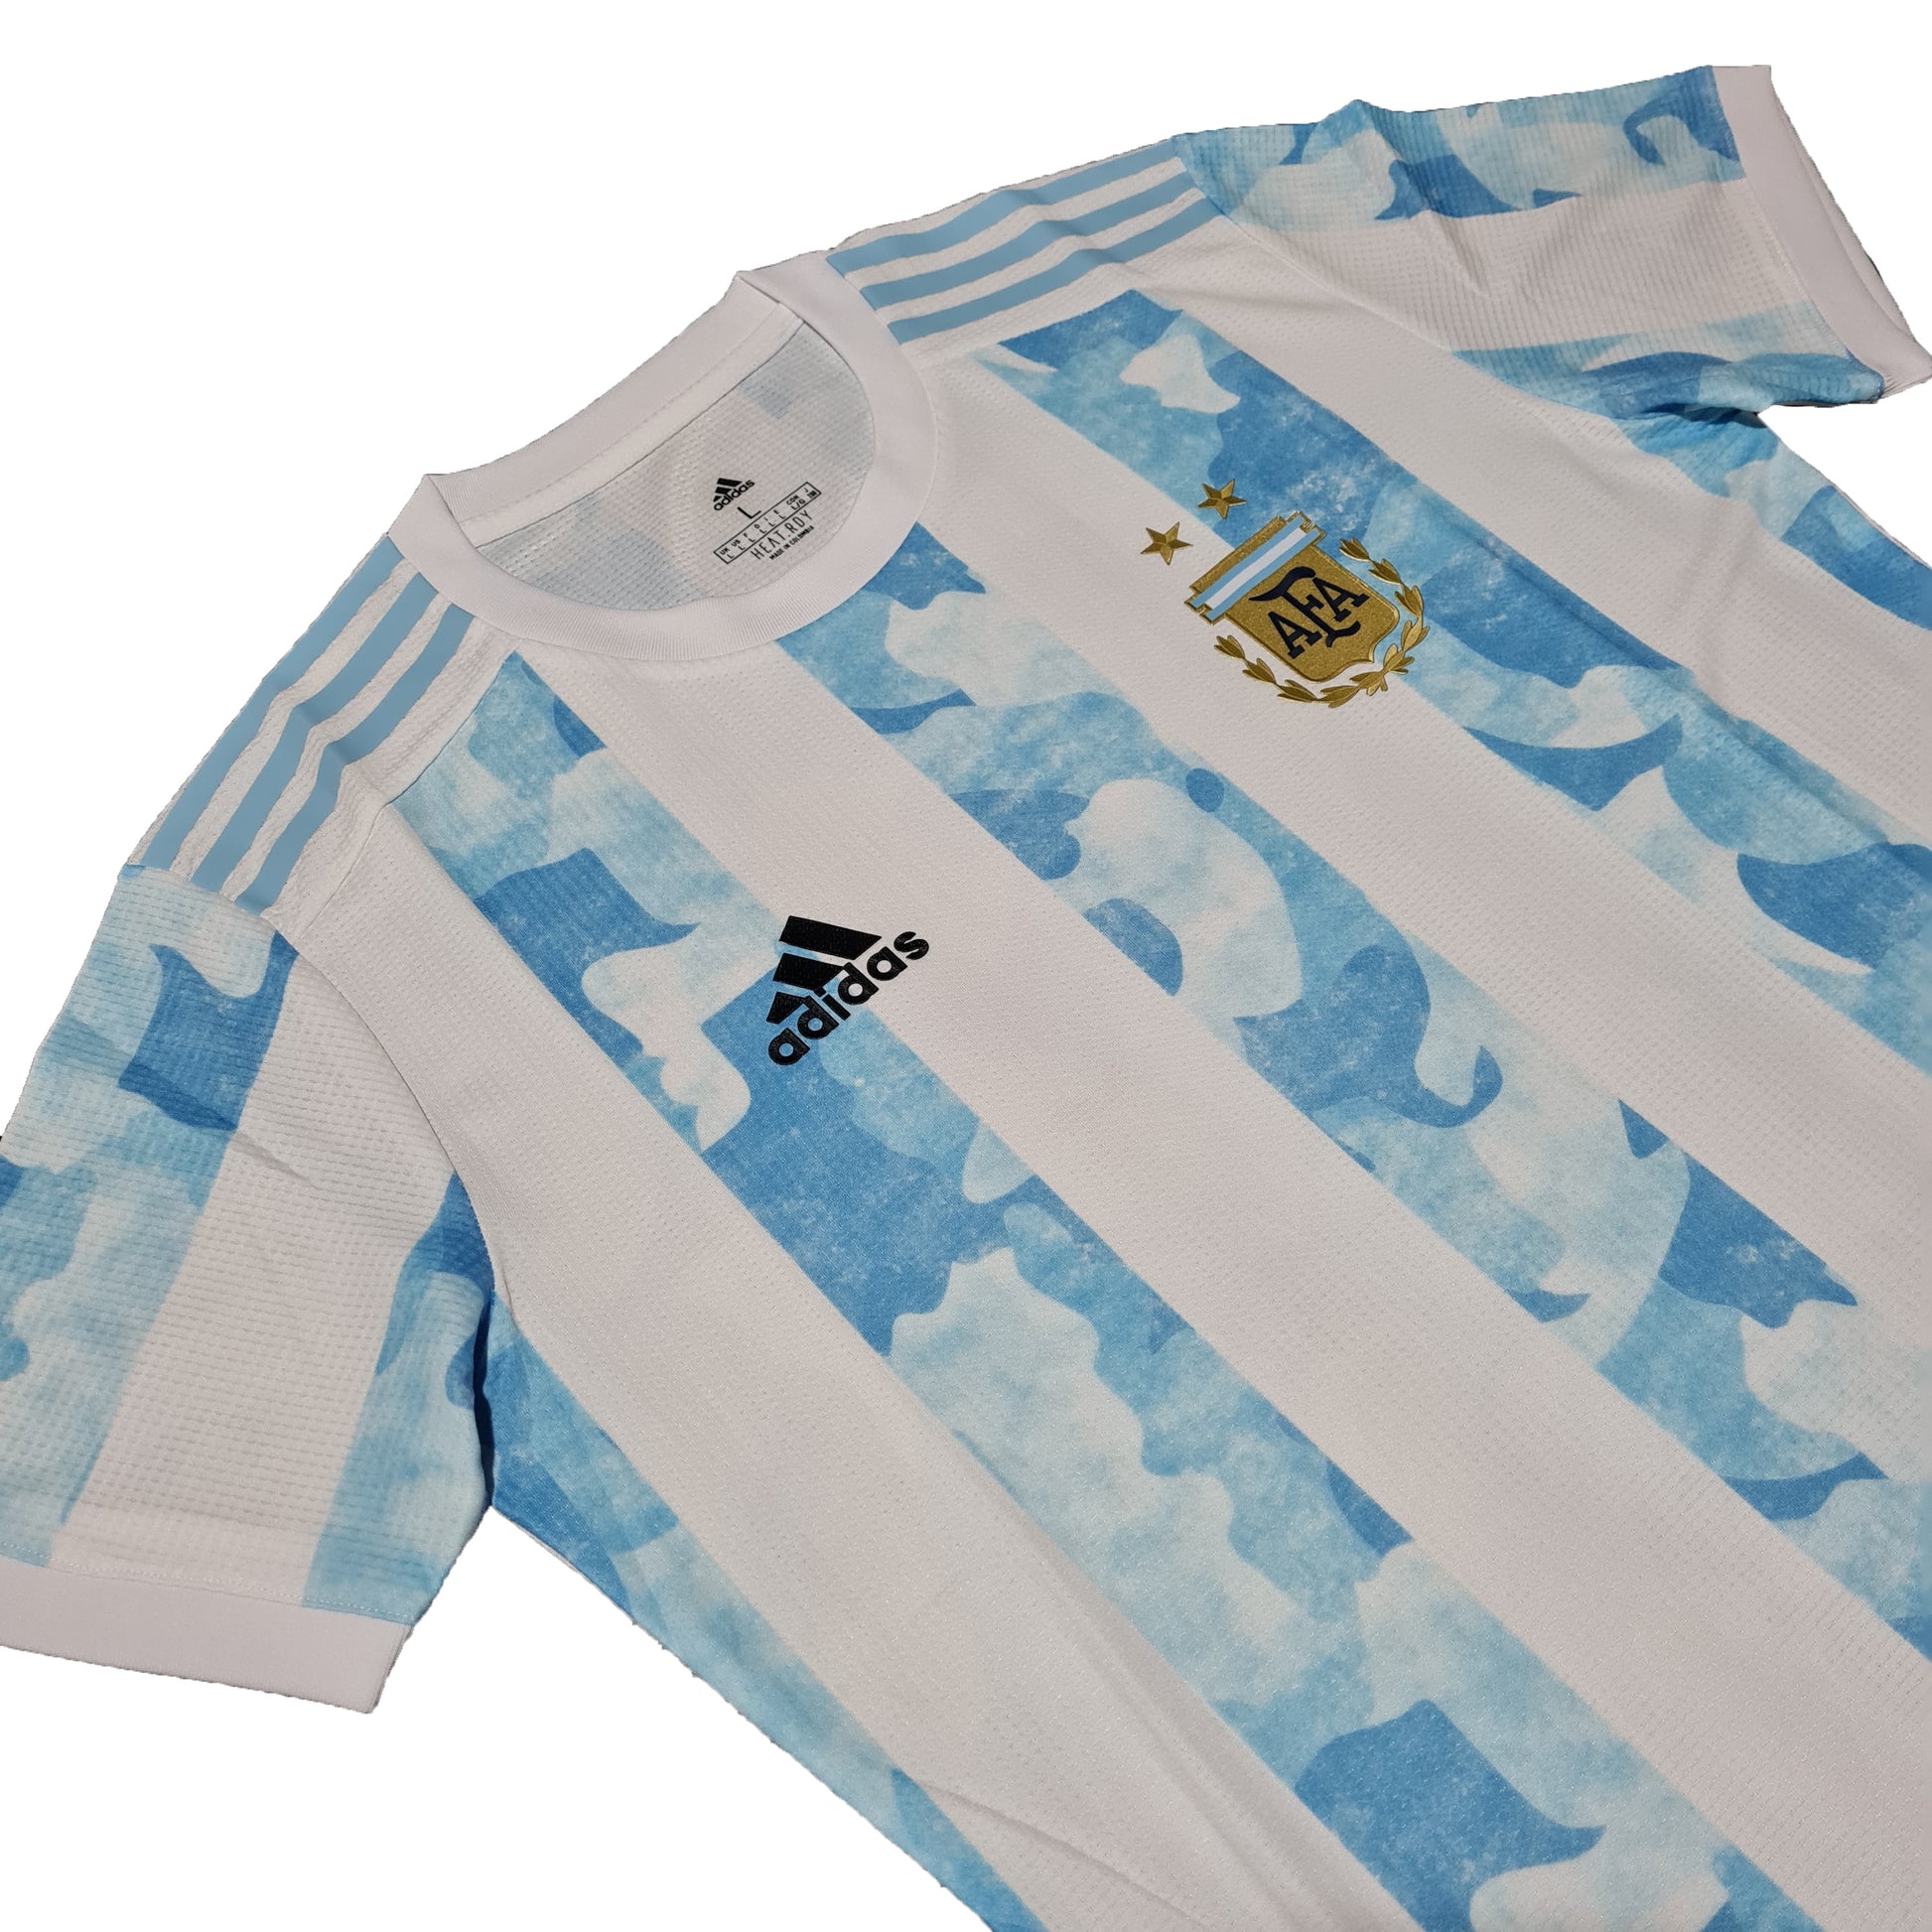 Argentina Titular 2021 - Thunder Internacional